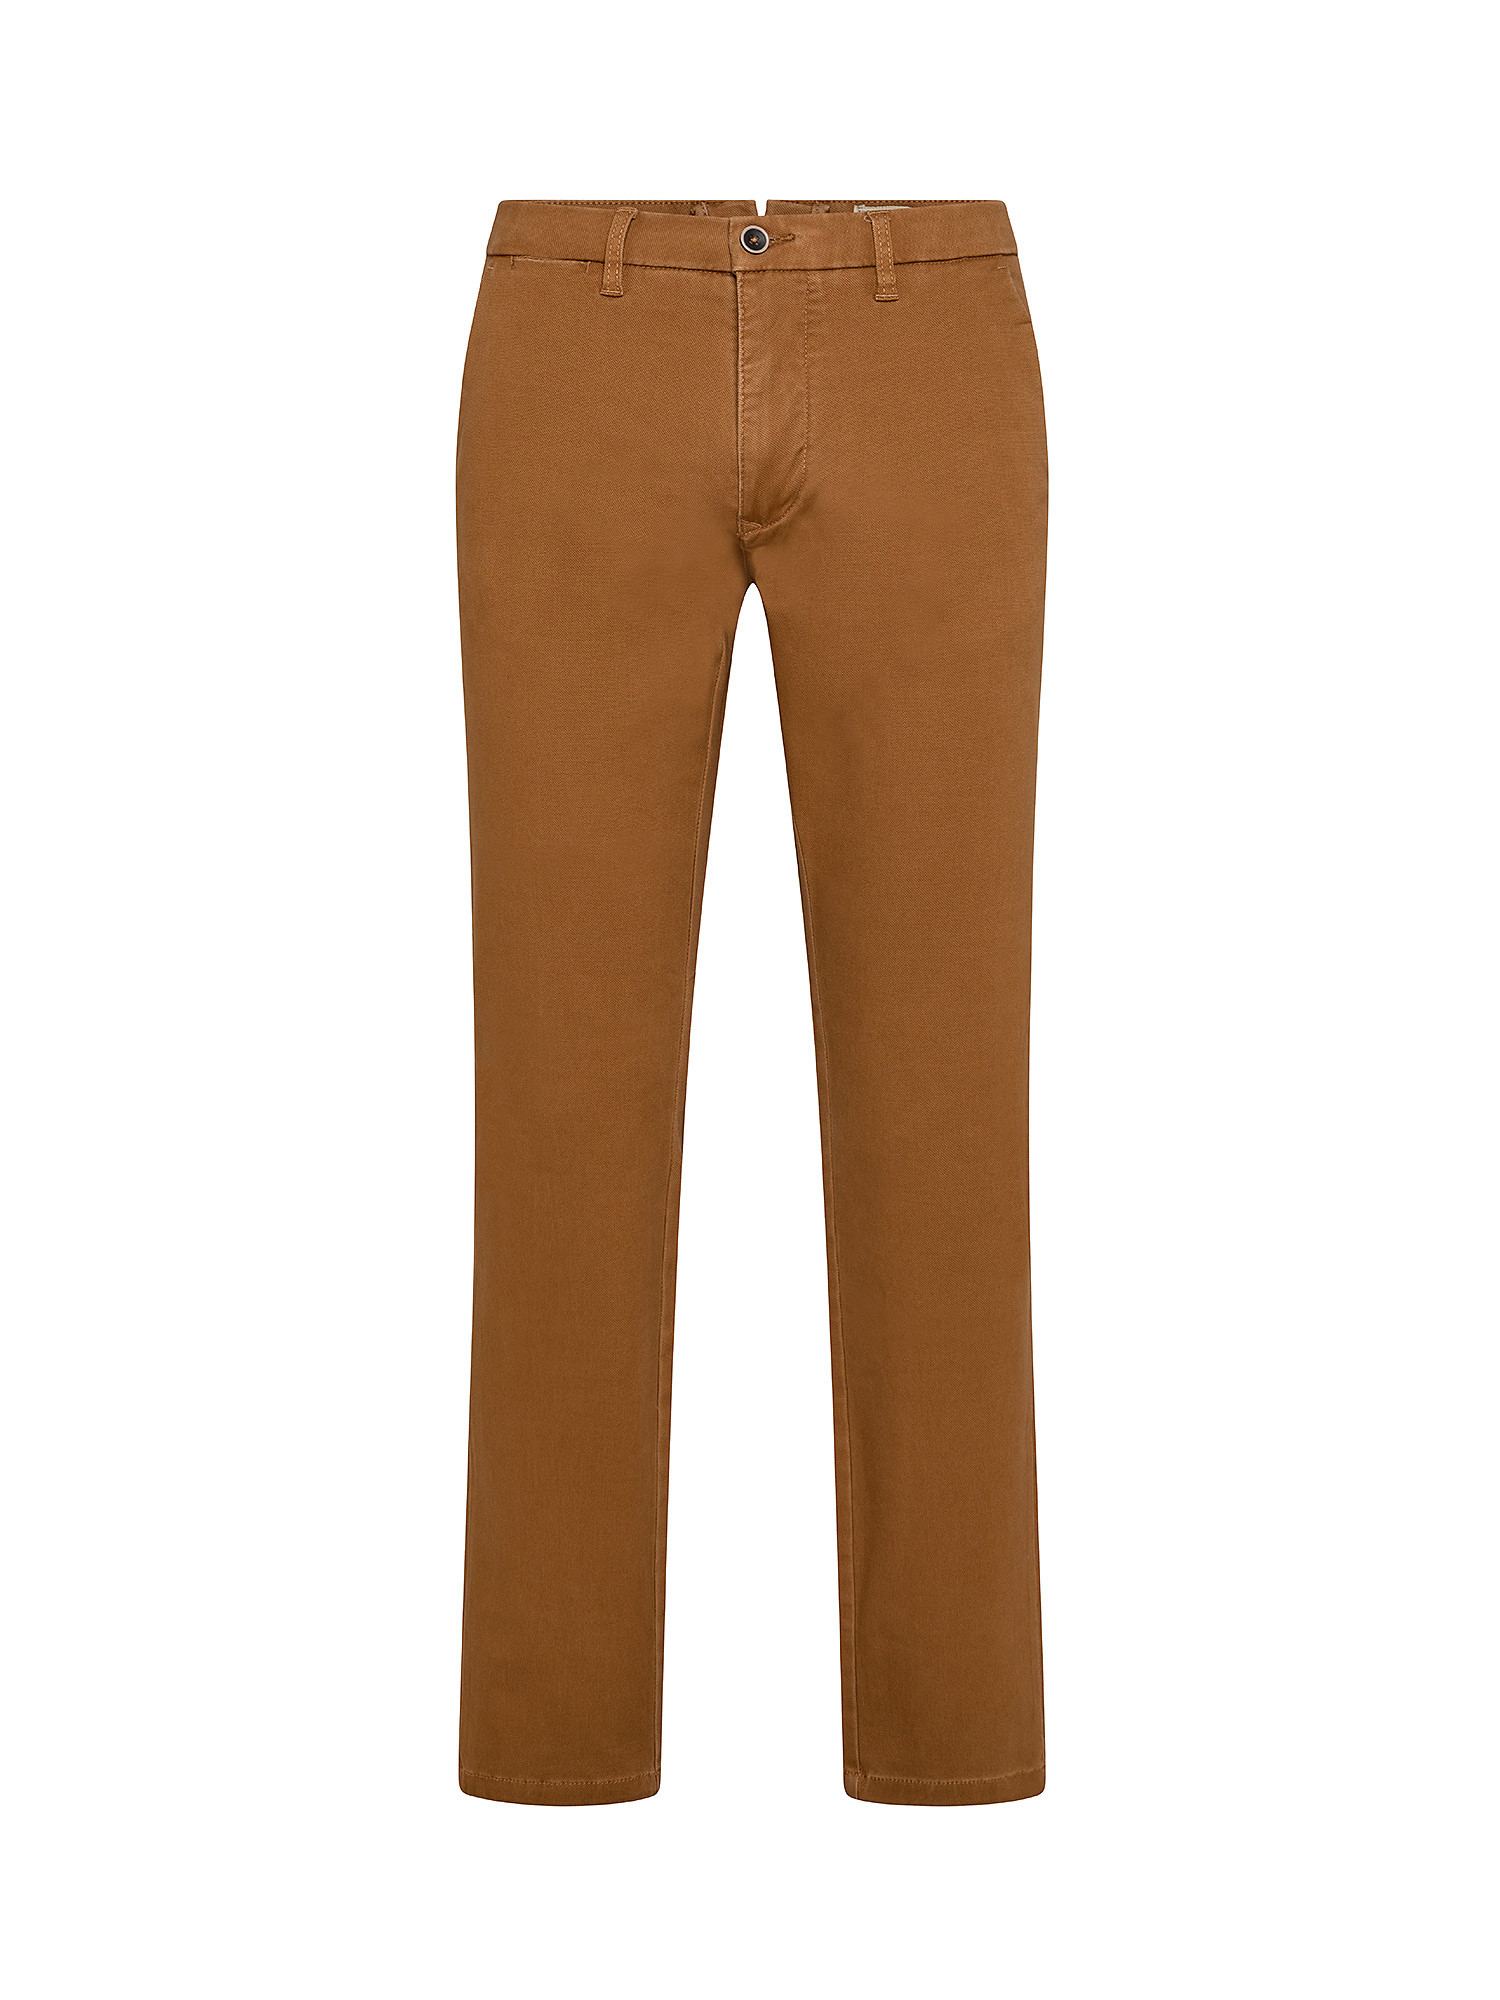 Pantalone regular fit in cotone elasticizzato, Marrone chiaro, large image number 0